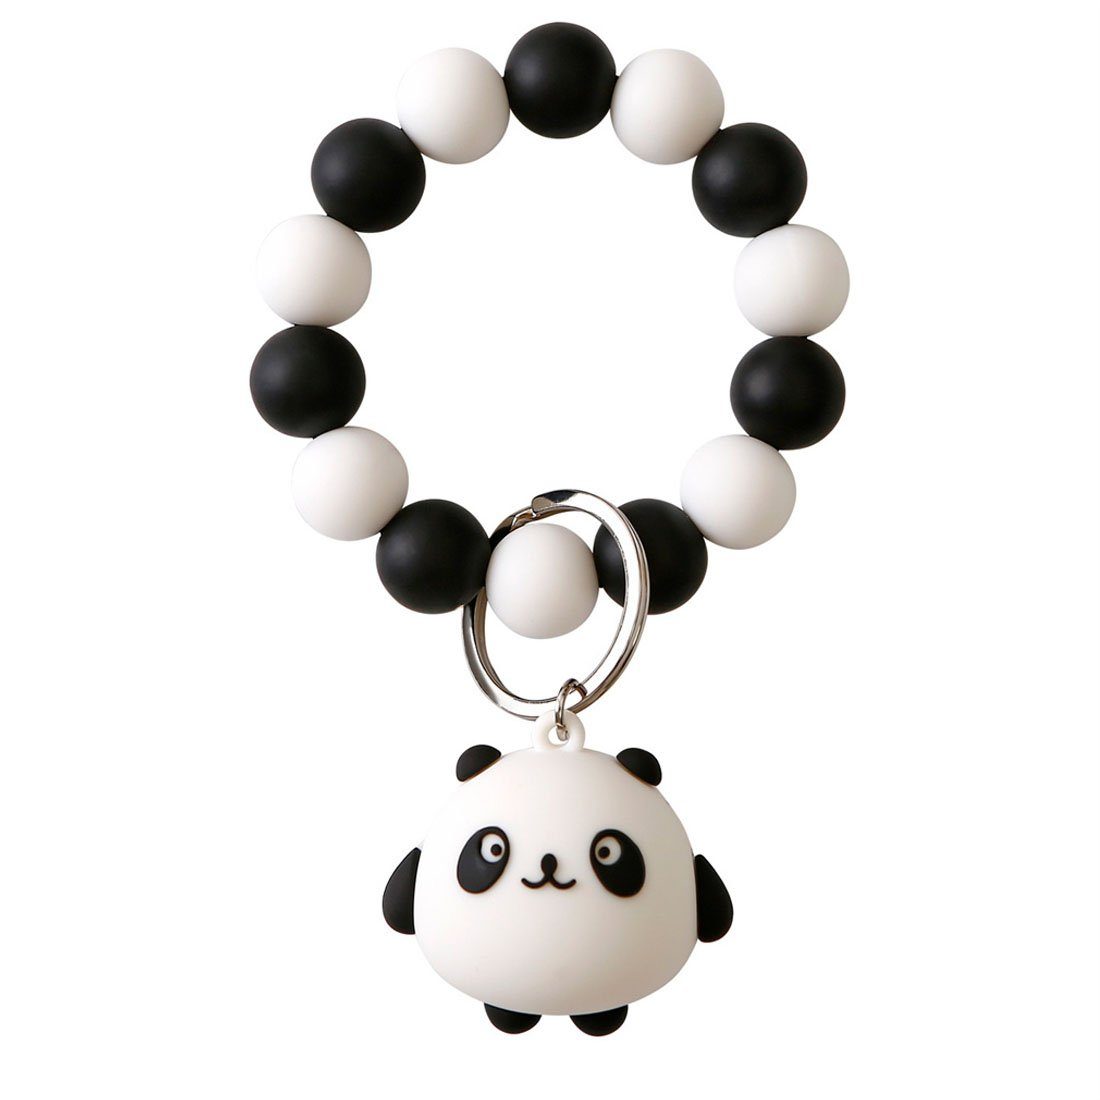 DÖRÖY Schlüsselanhänger Panda Silikon-Schlüsselanhänger für das Handgelenk mit Perlen Schwarz | Schlüsselanhänger